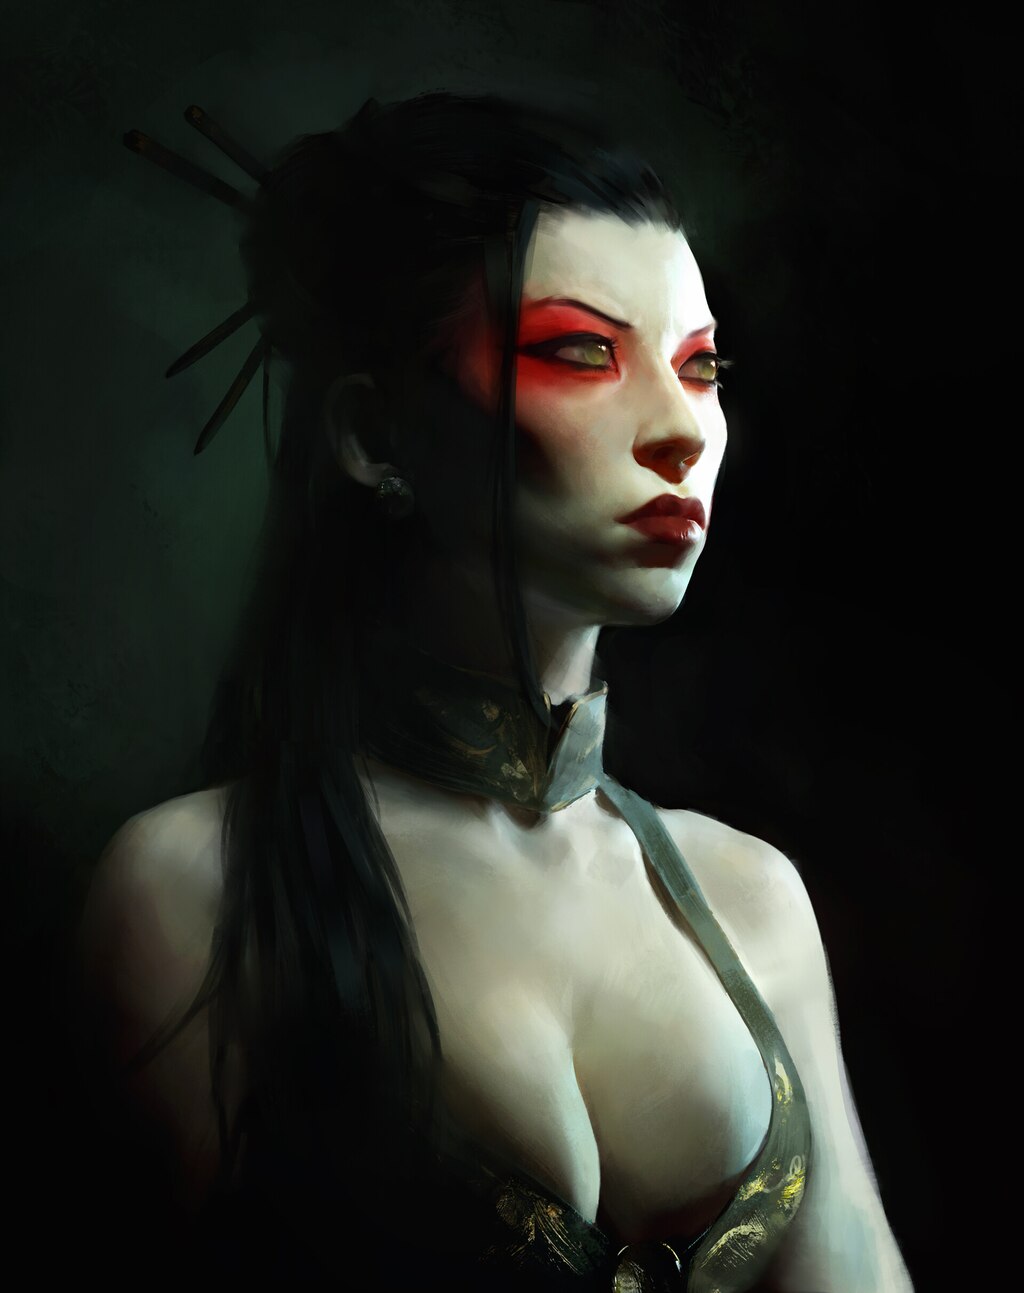 Steam Community :: Guide :: ♆ Guia de Mods - Vampire: The Masquerade -  Bloodlines ♆